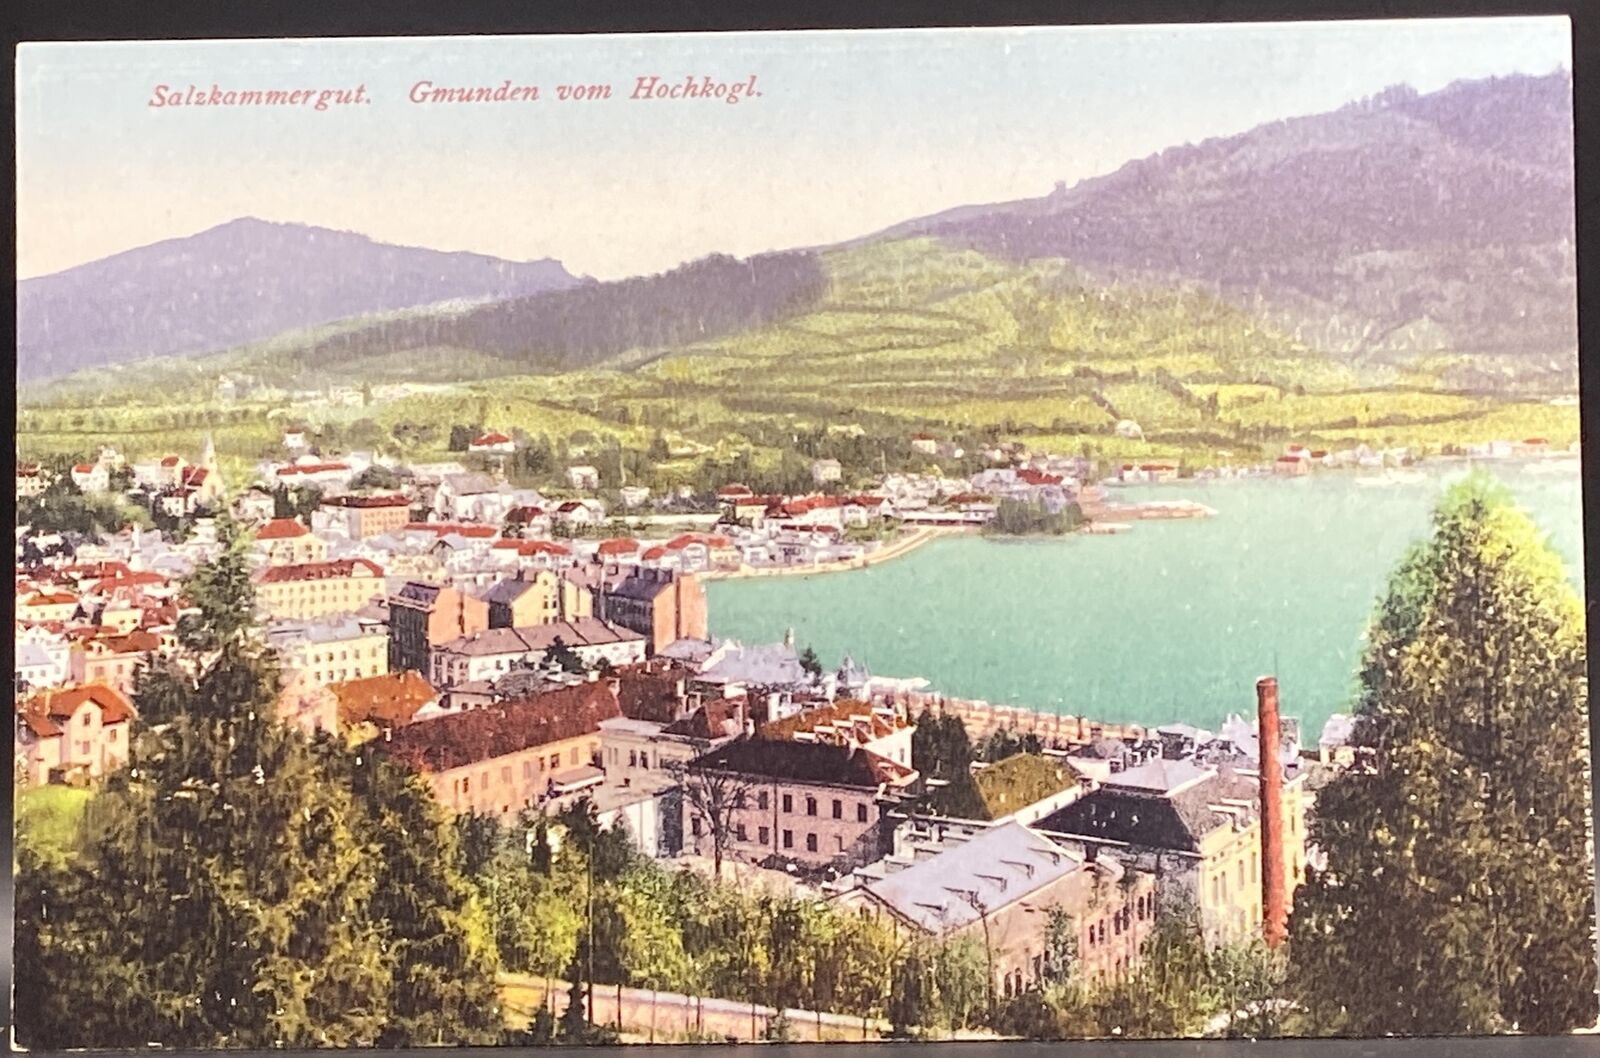 Salzkammergut Gmunden vom Hochkogl, Austria postcard from 1912 by Brandt, 1099